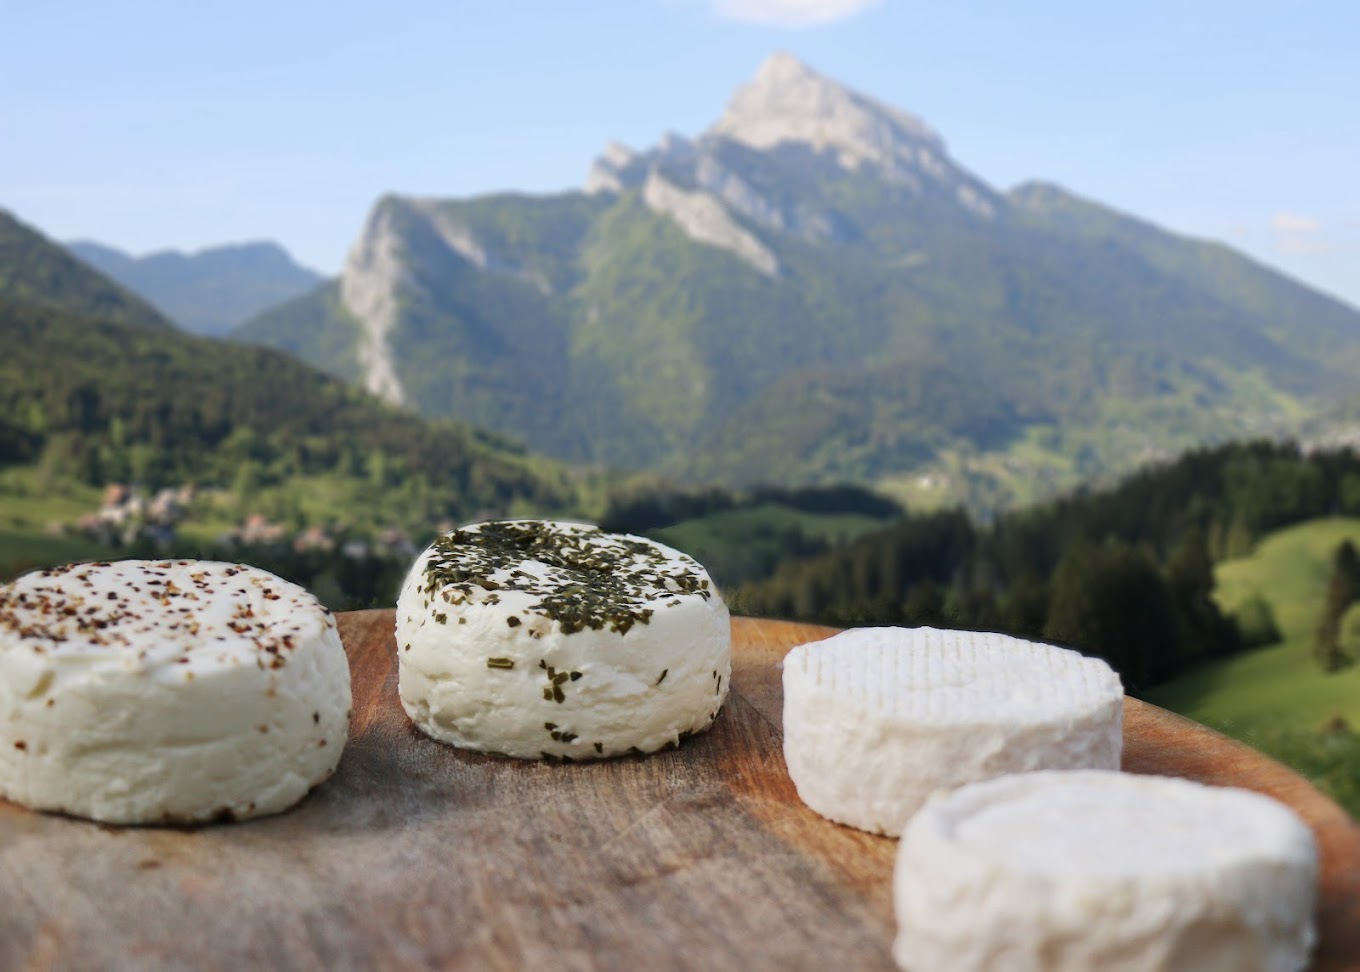 Les fromages de la ferme.<br />
Photo de la page Internet Mimosa de la Ferme